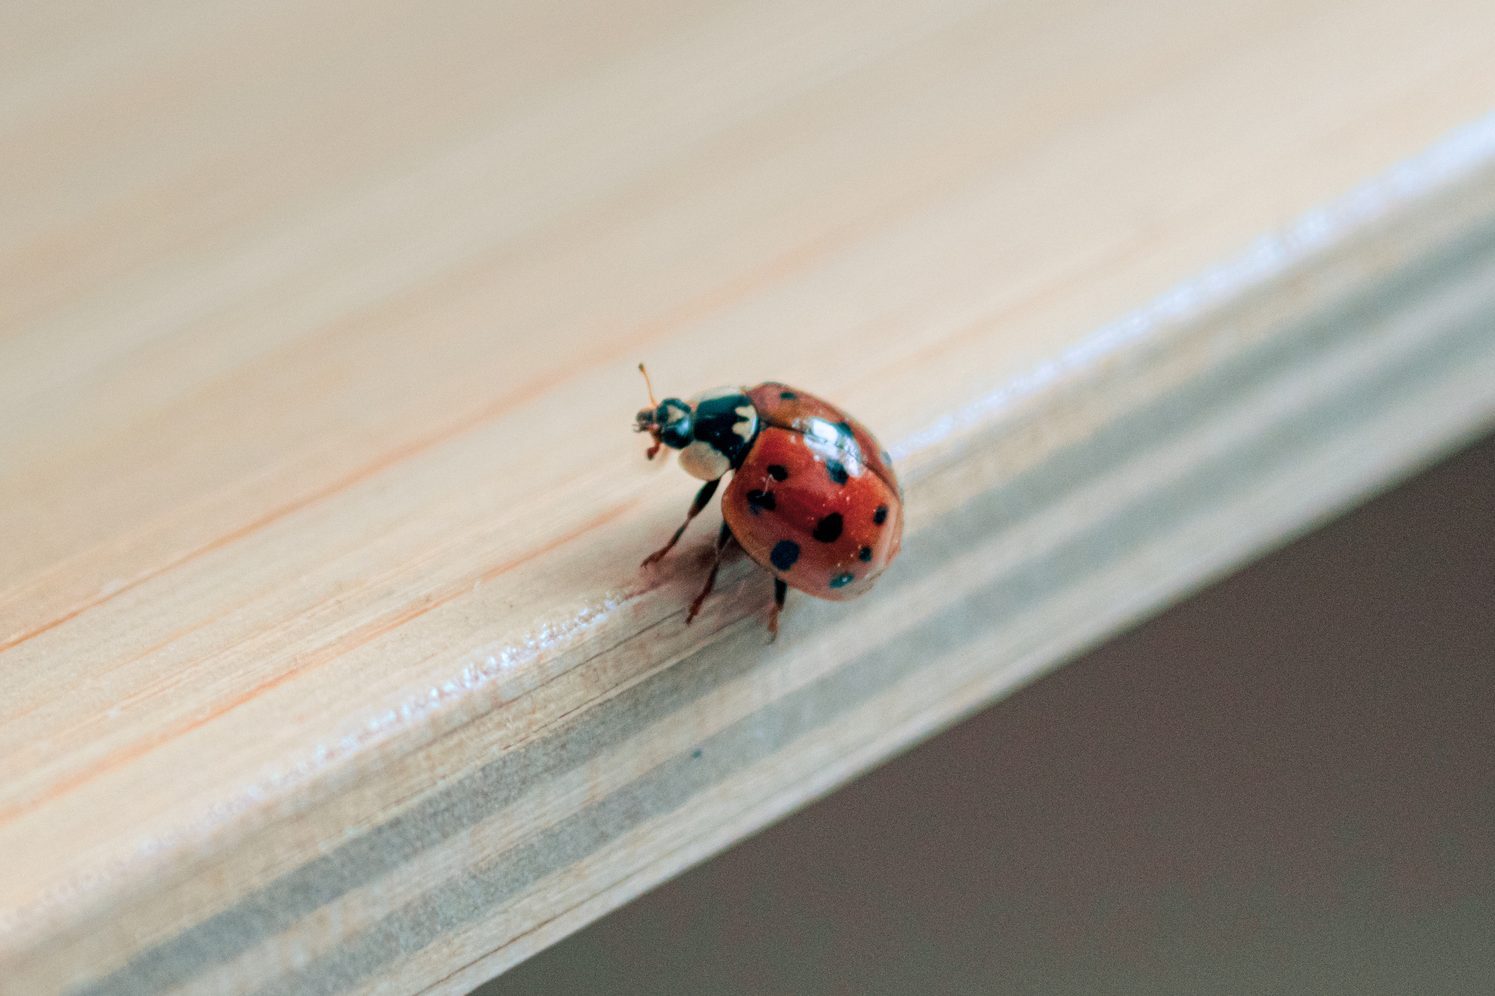 Ladybug on a shelf